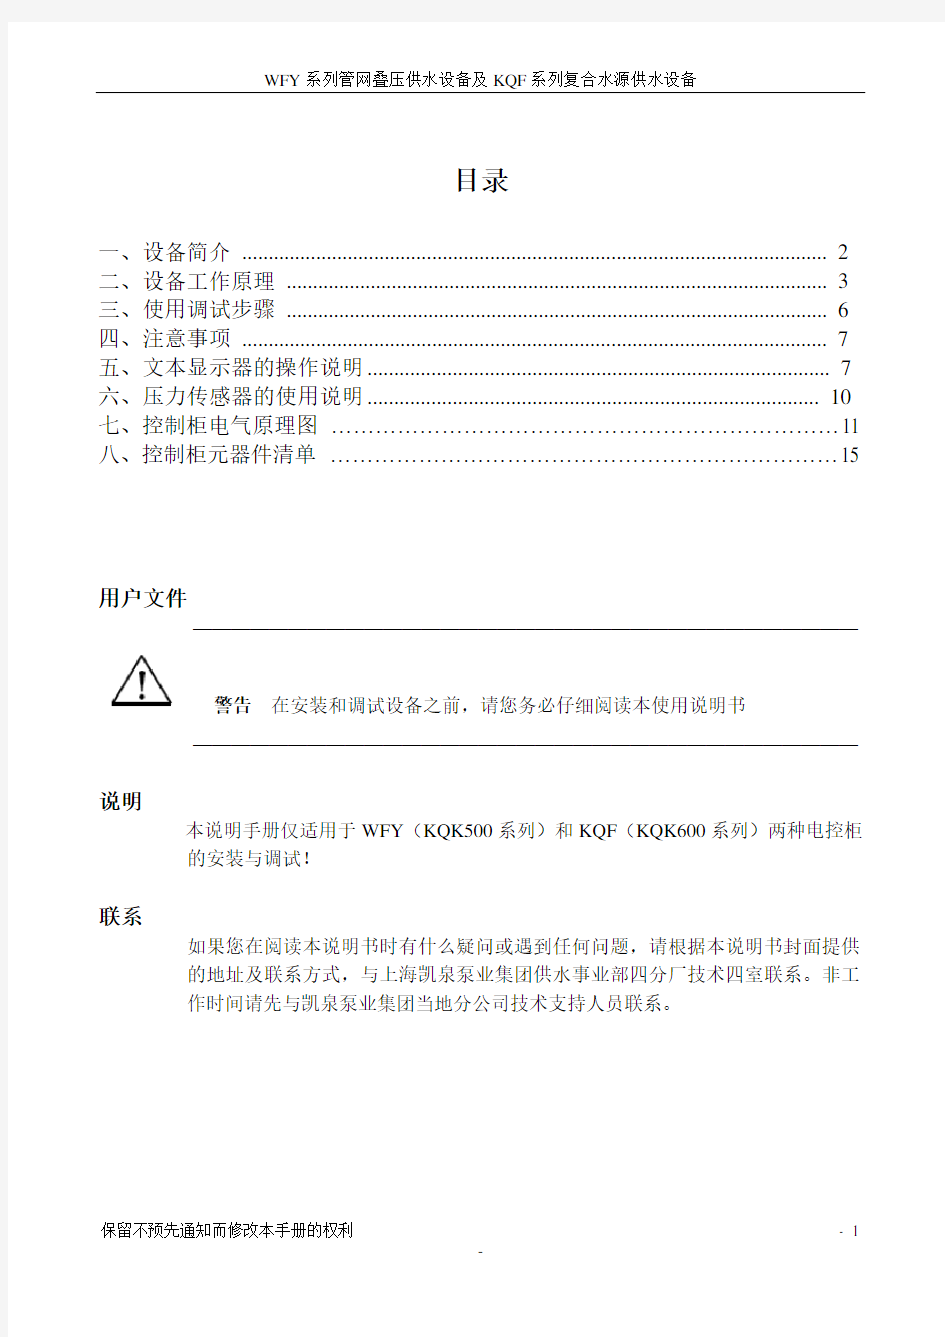 上海凯泉WFY标准说明书文本